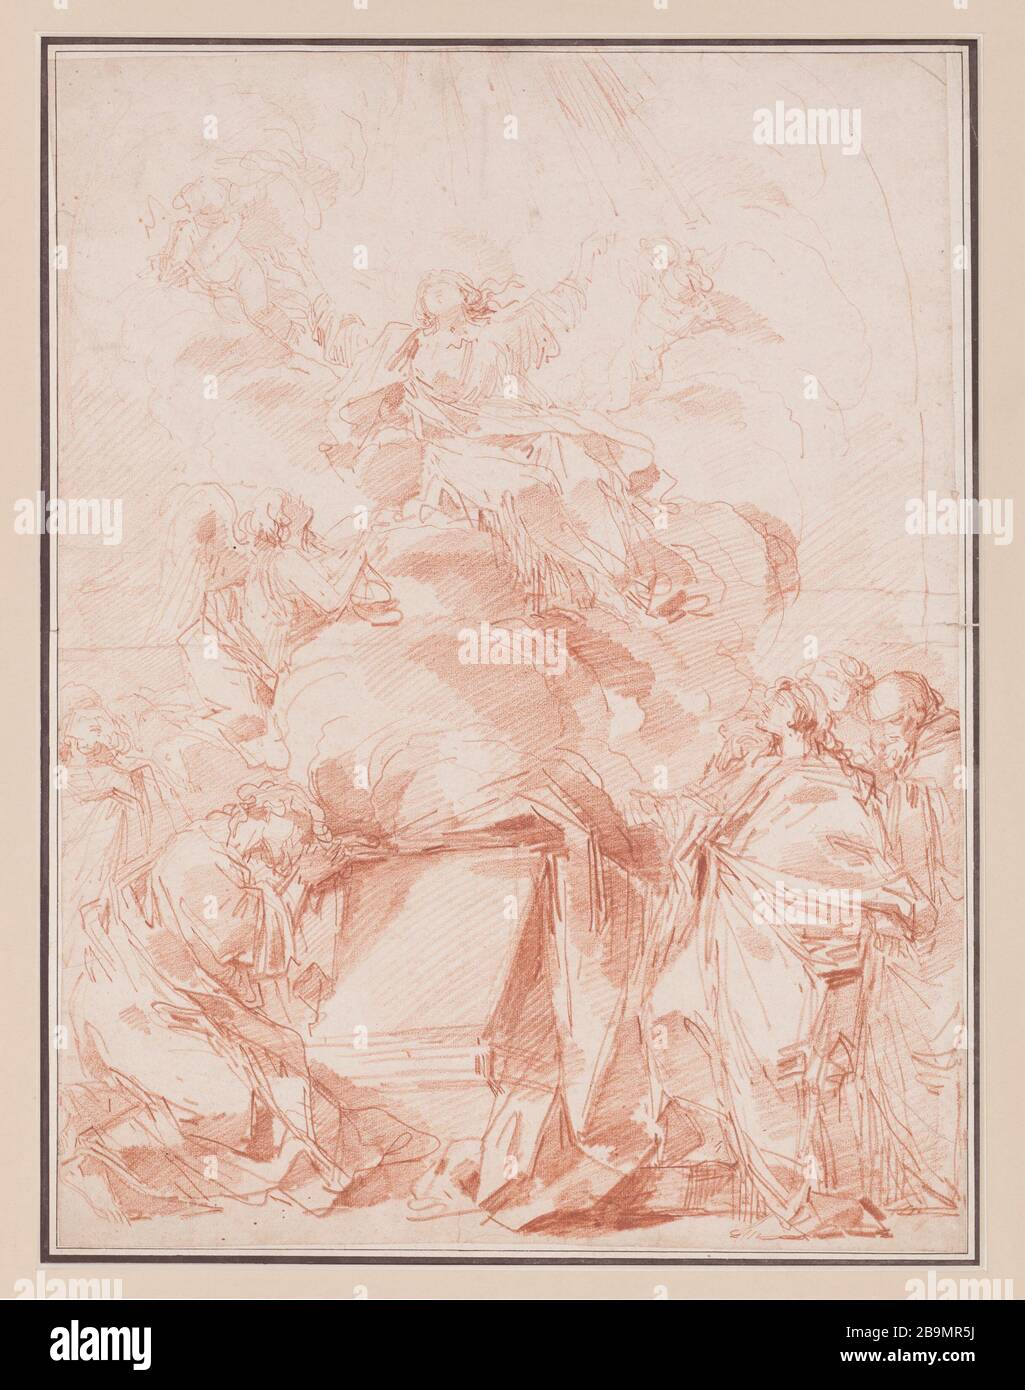 L'Assomption de la Vierge André le Brun (1757-1811), sculpteur. 'L'assomption de la Vierge'. Sanguine sur papier. 1759-1768. Musée des Beaux-Arts de la Ville de Paris, petit Palais. Banque D'Images